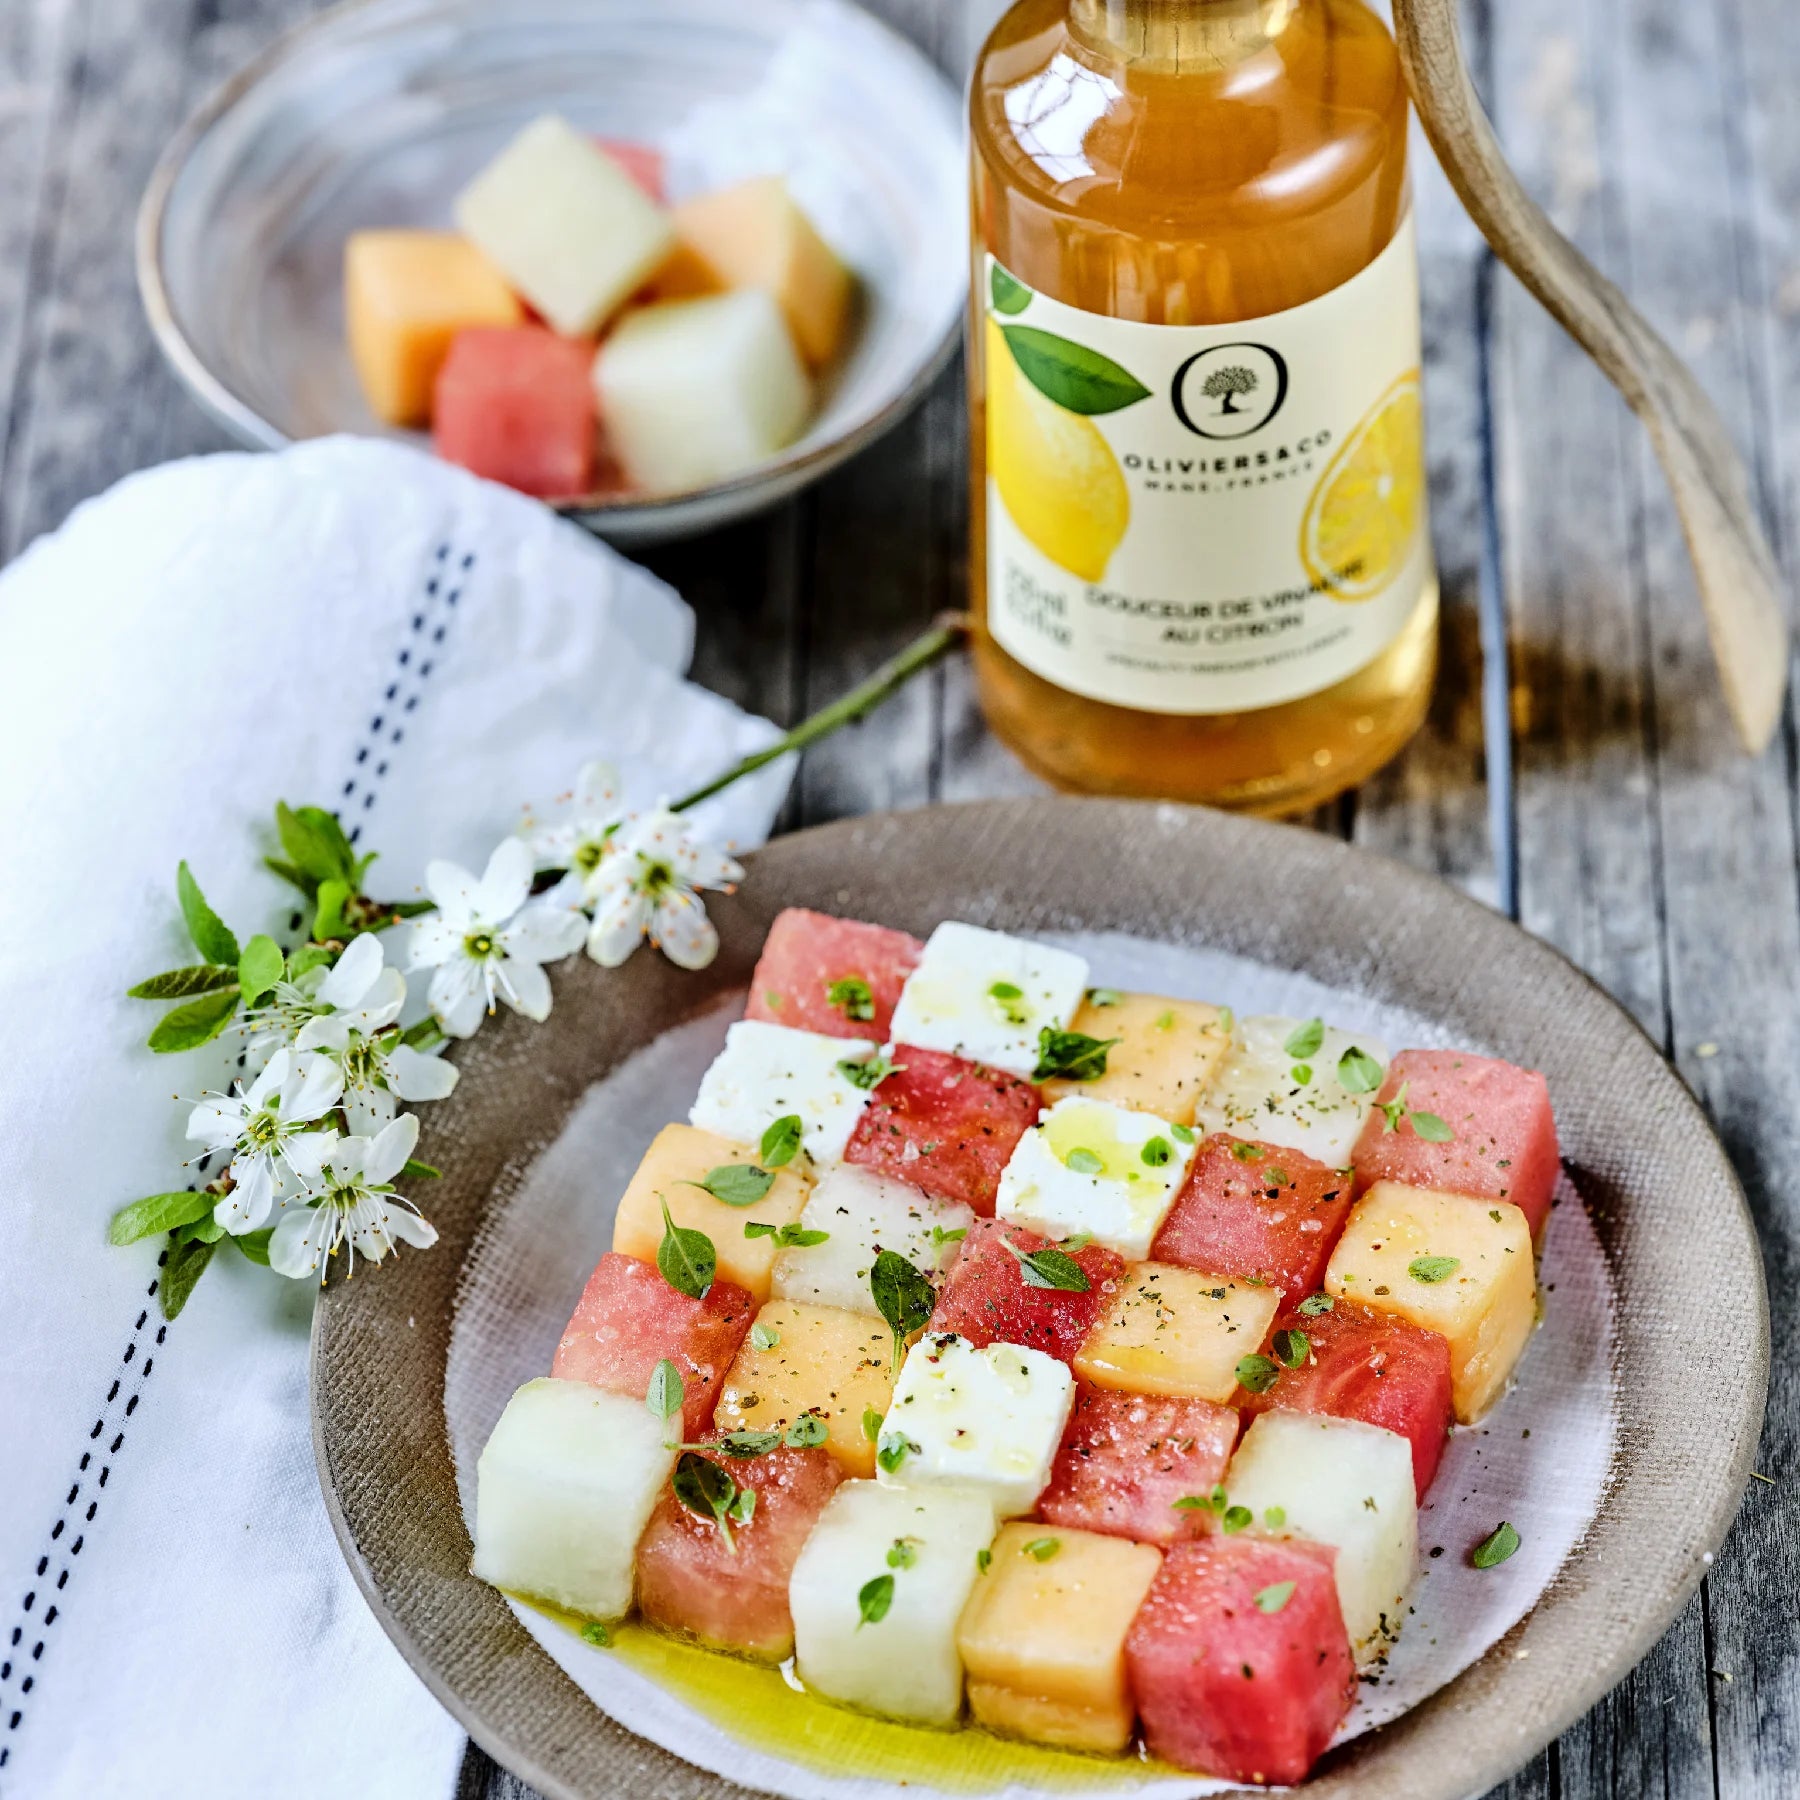 Opskrift på melon & feta salat med limited edition citroneddike fra Oliviers & Co